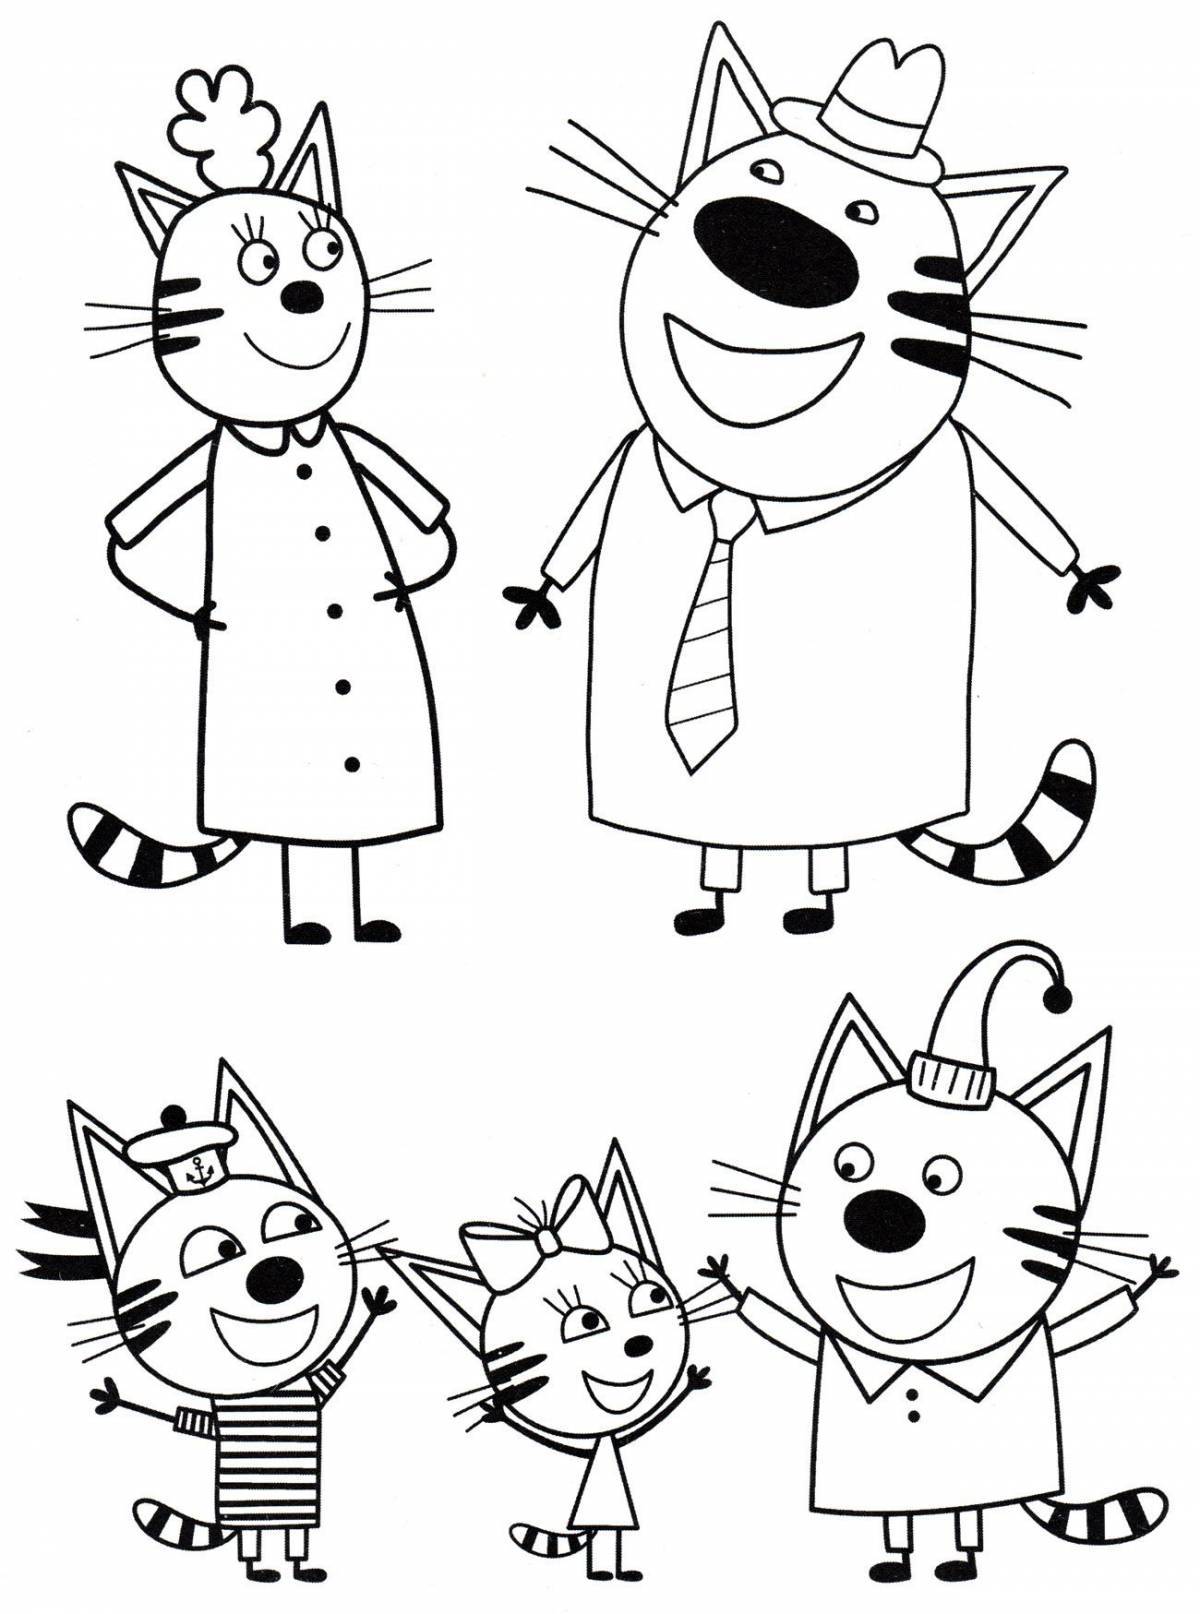 Увлекательная раскраска 3 кота для детей дошкольного возраста